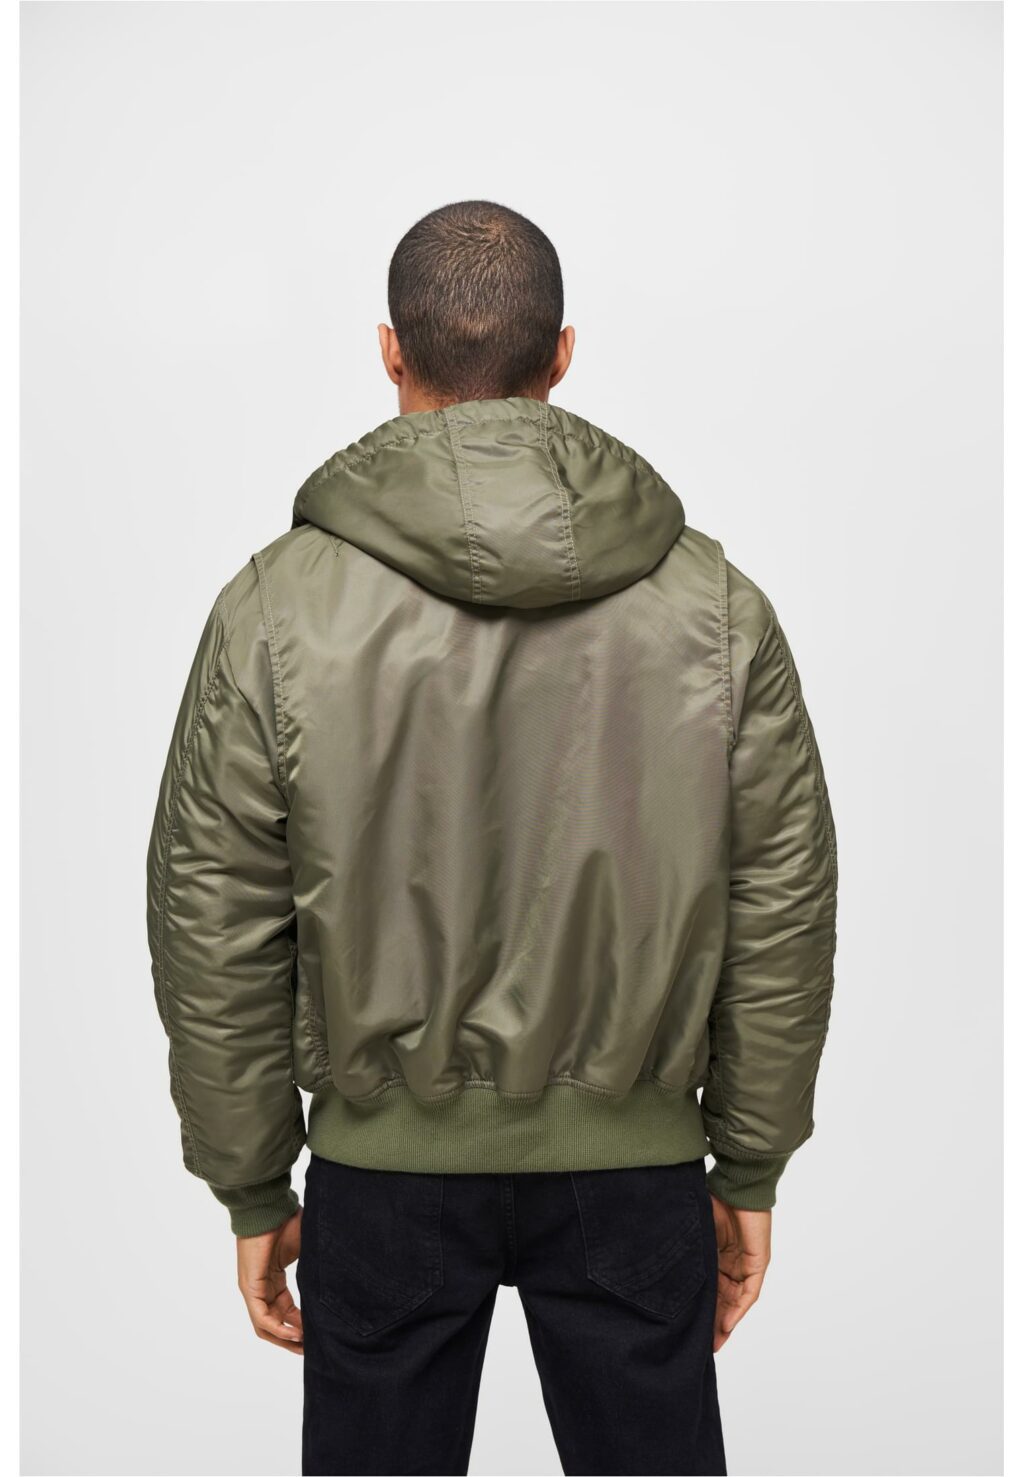 Brandit CWU Jacket hooded olive BD3188